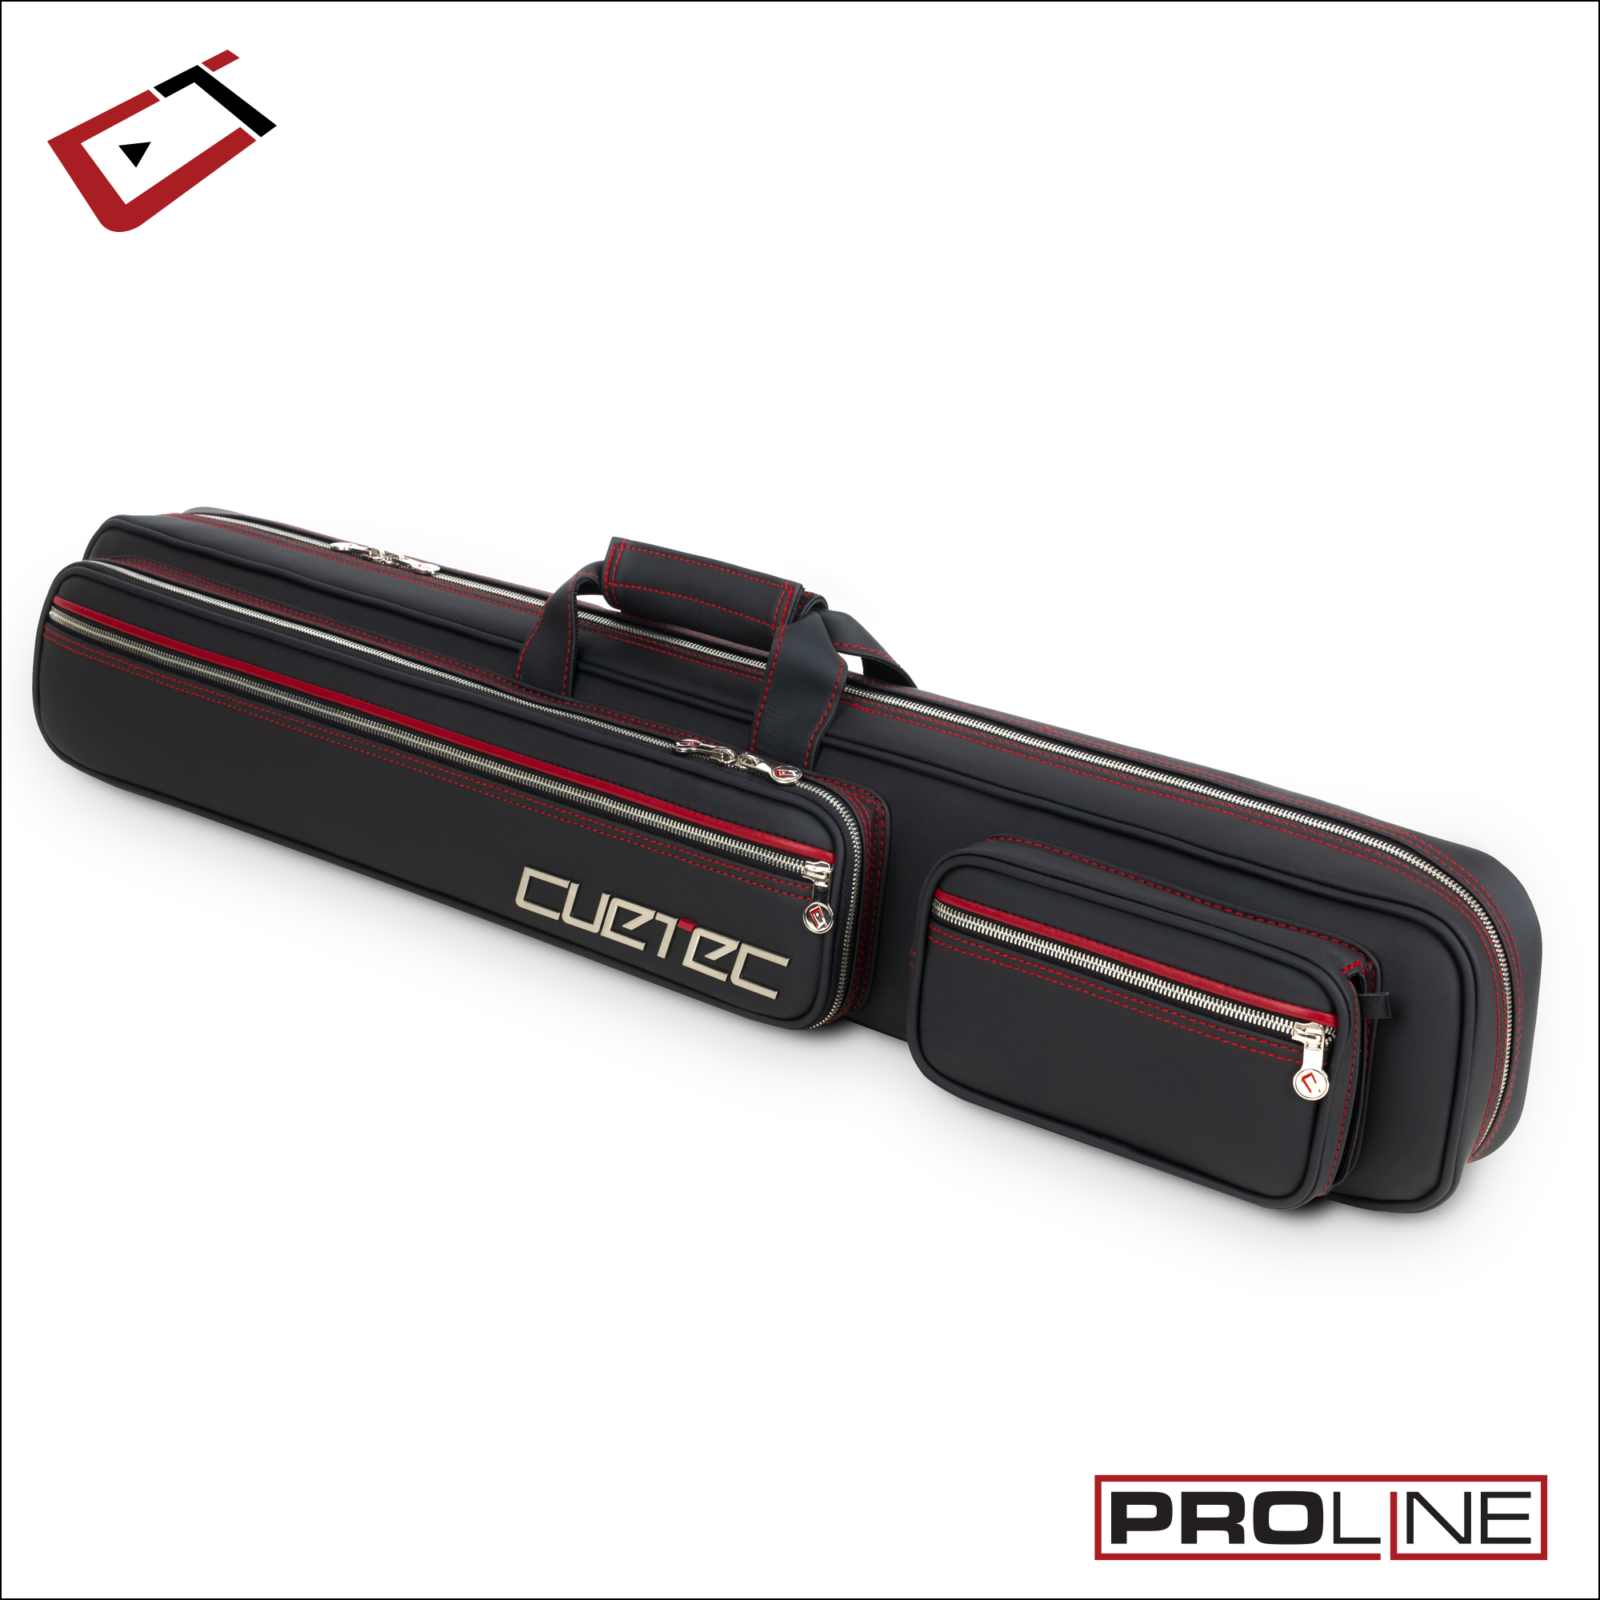 Cuetec Pro Line 4X8 Soft Case 3/4 View